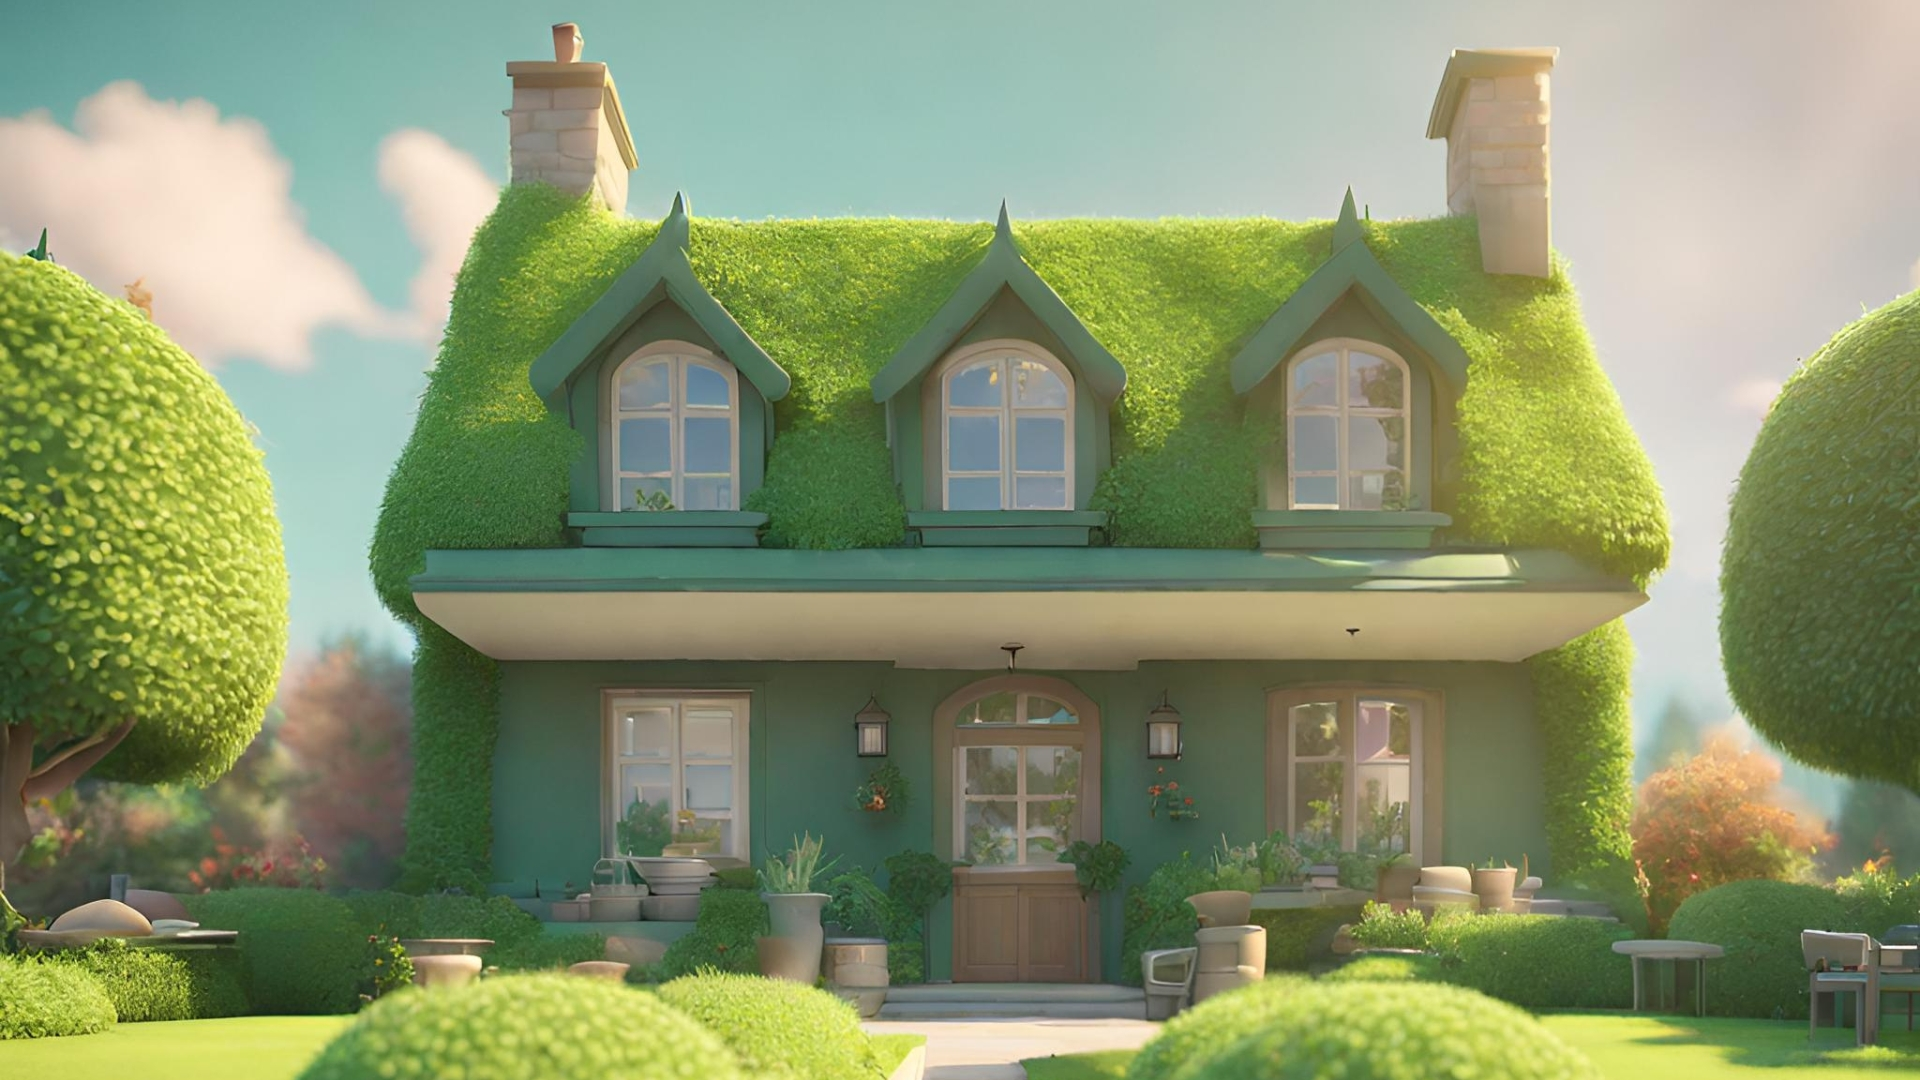 Une belle maison au milieu d'un jardin verdoyant.